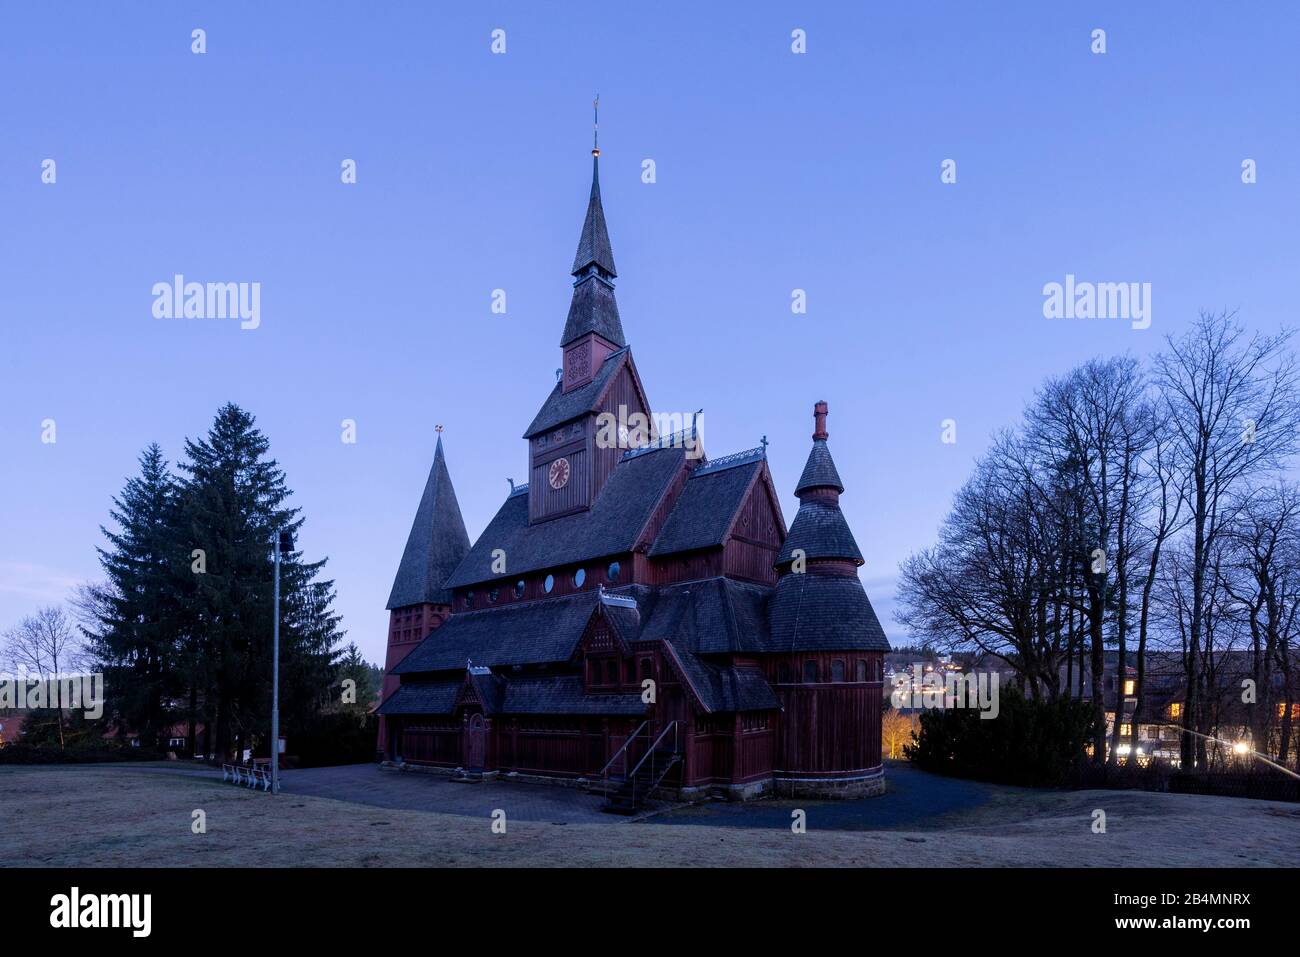 Deutschland, Niedersachsen, Harz, Goslar, Gustav Adolf Stave Kirche in Hahnenklee, erbaut 1907 - 1908 nach dem Vorbild der Stave Kirche Borgund in Norwegen. Stockfoto